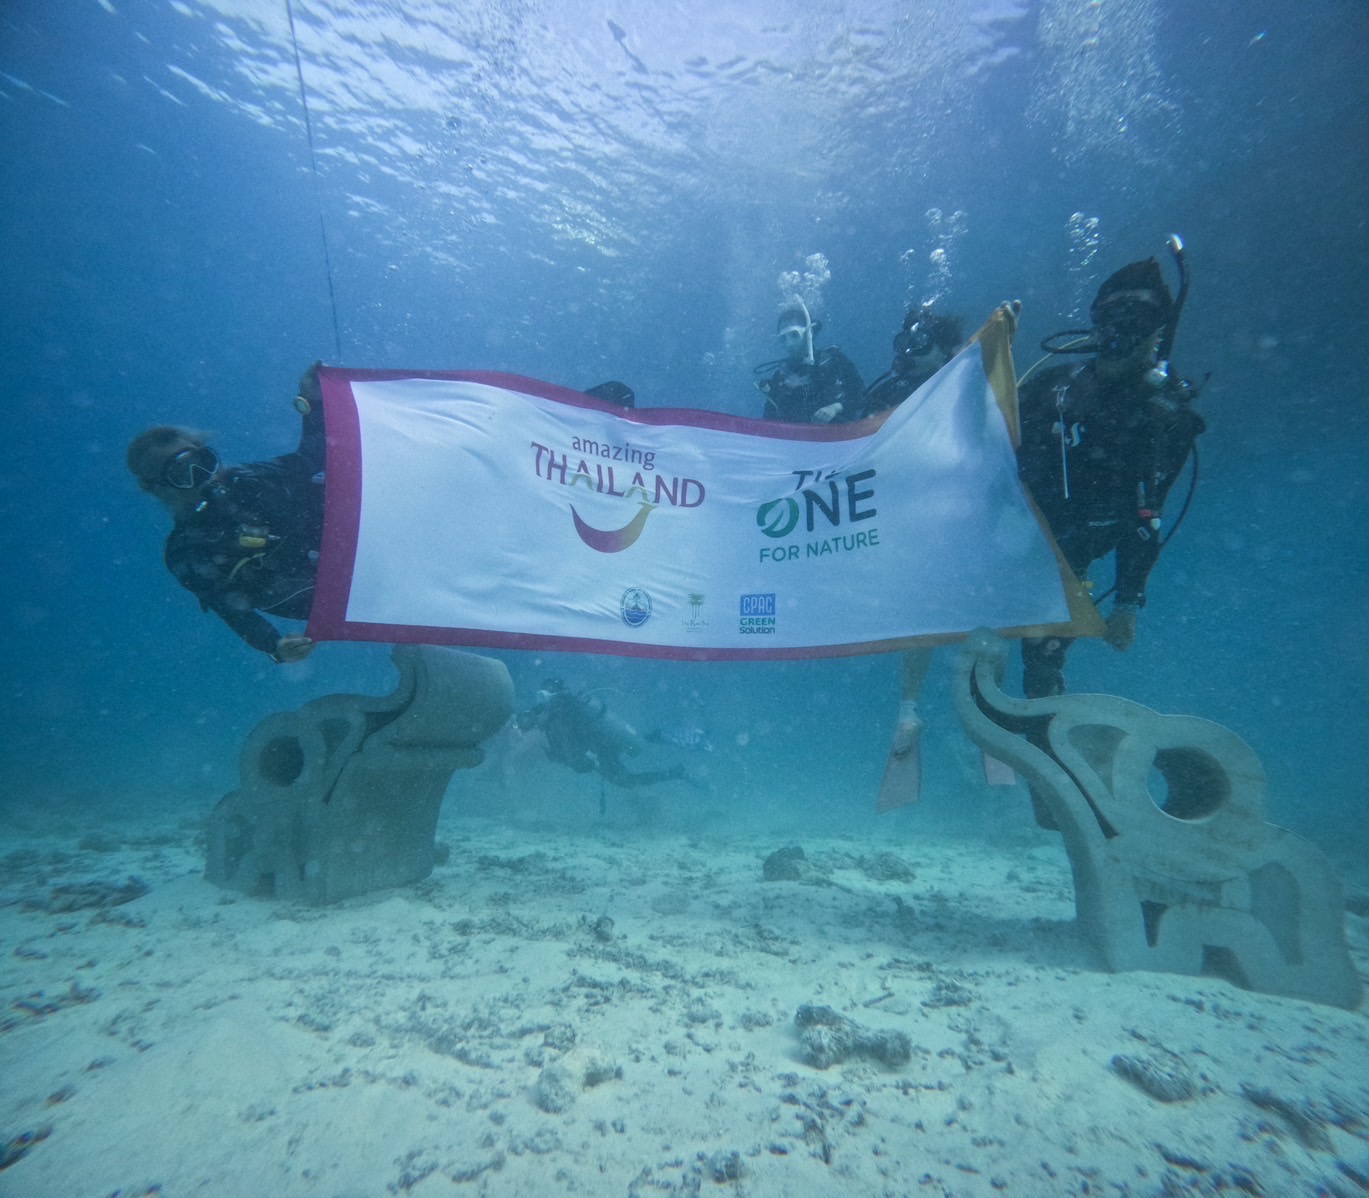 ททท. จัดโครงการ “THE ONE FOR NATURE” ยิ่งเที่ยวยิ่งรักษ์ ครั้งที่ 2 นำปะการังเทียมรูปช้างลงสู่ทะเลภูเก็ต